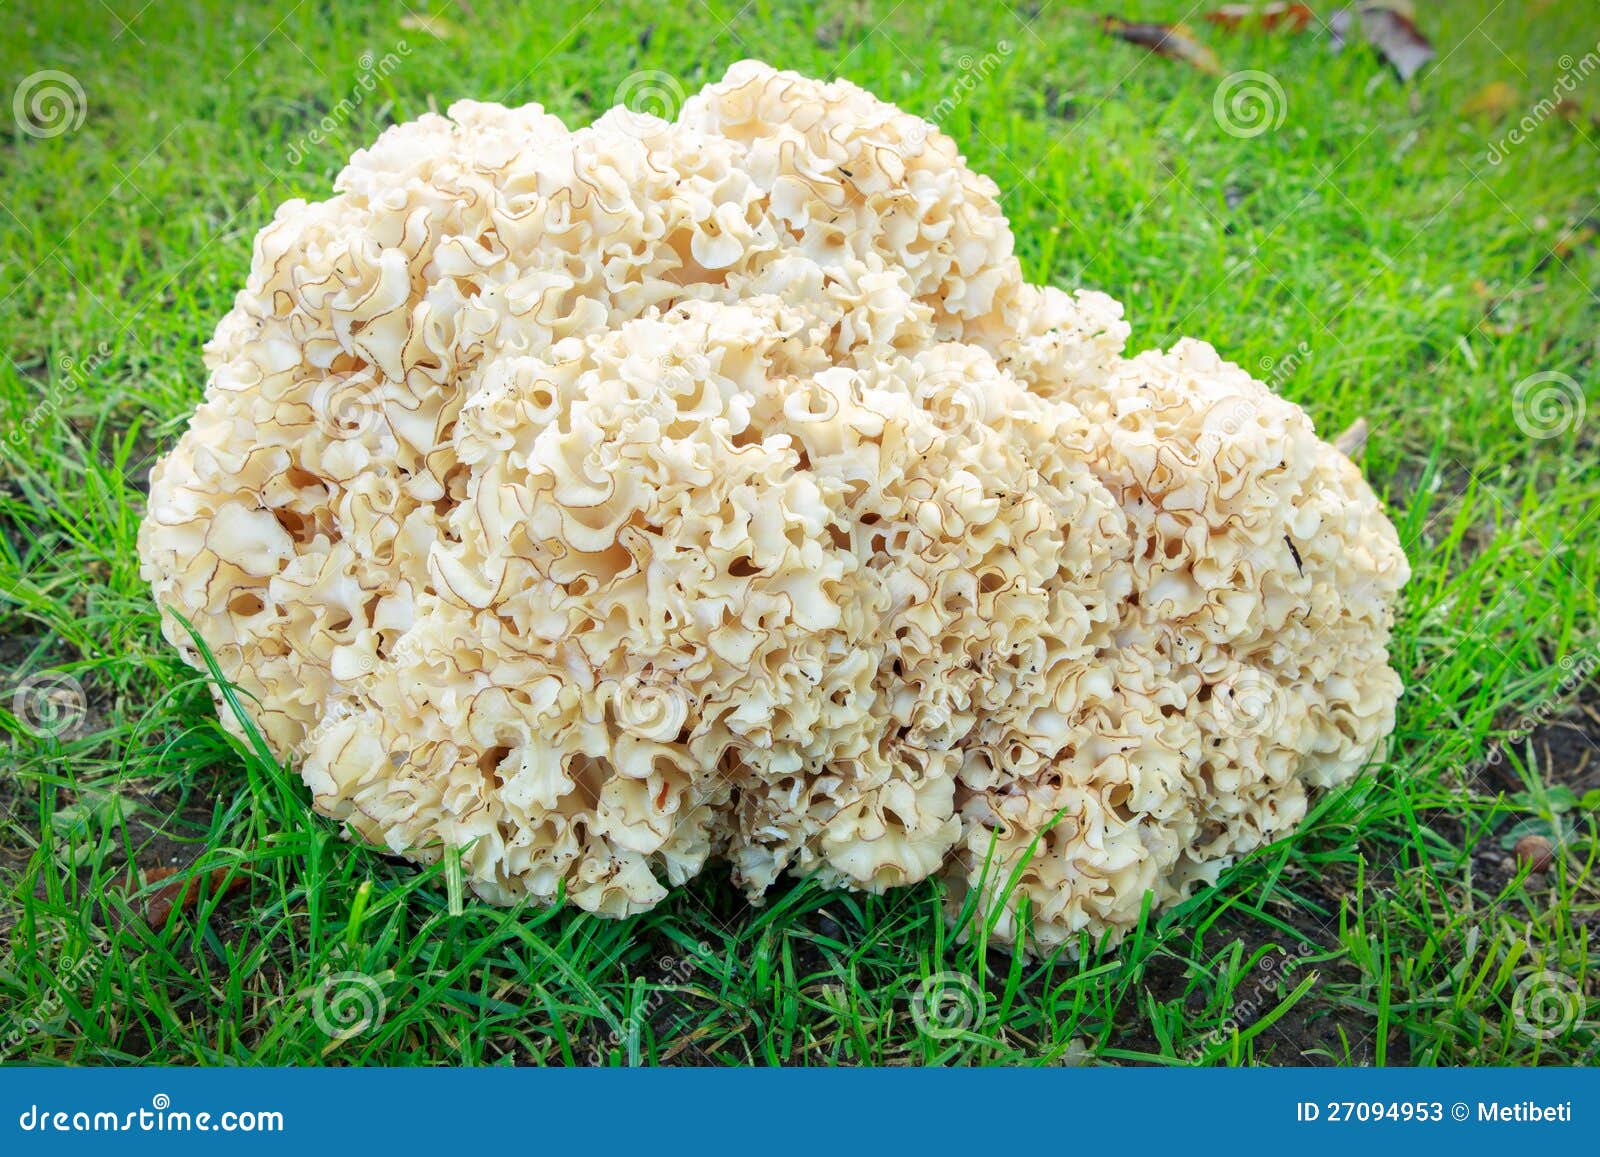 Спарассис курчавый, грибная капуста и коралловый гриб